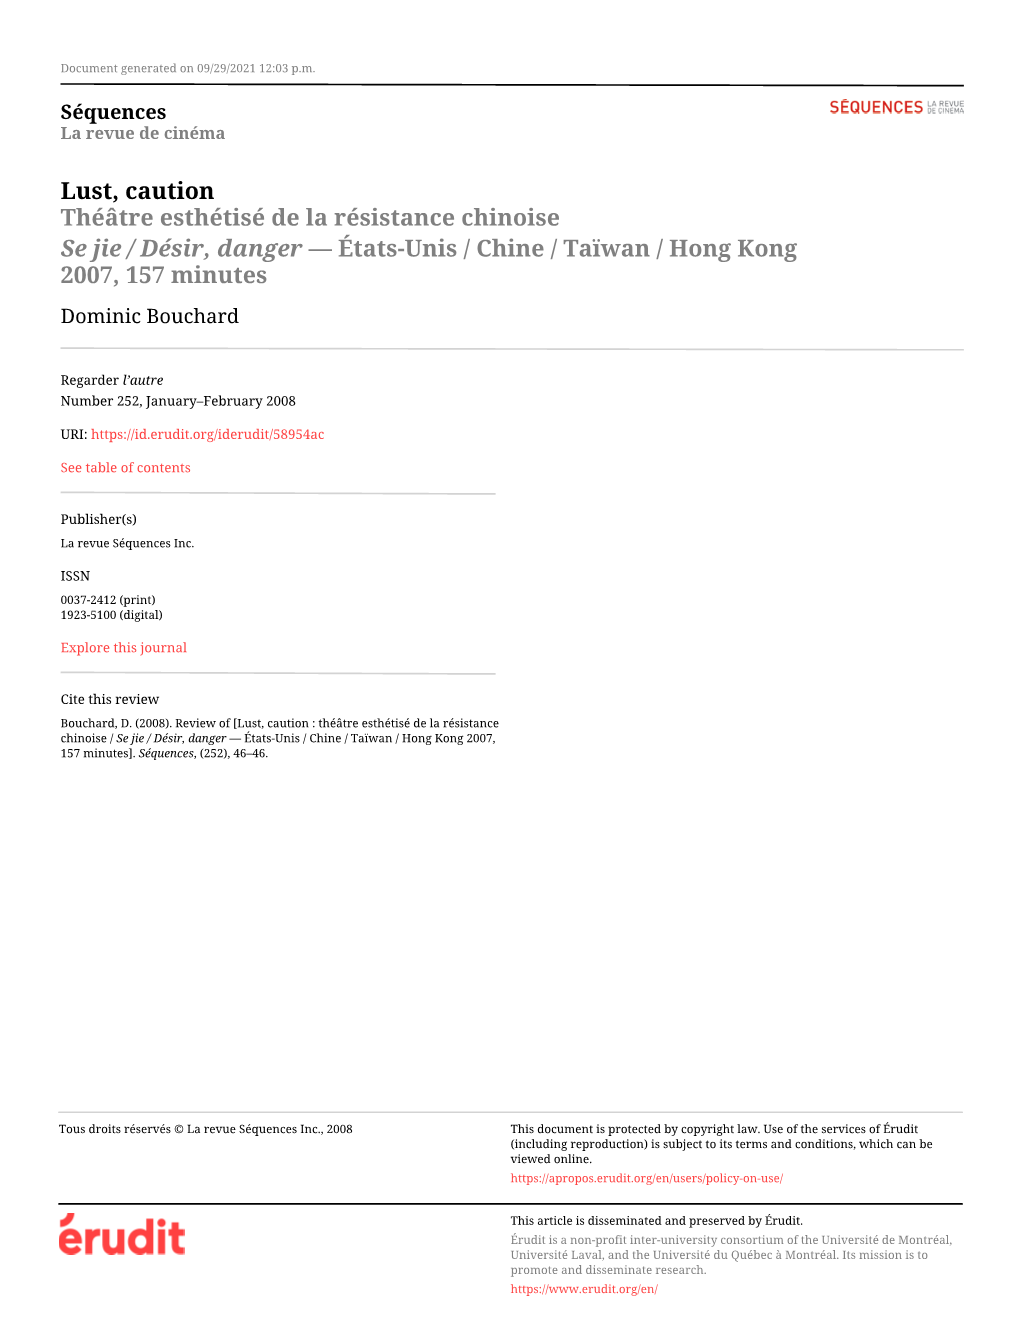 Lust, Caution Théâtre Esthétisé De La Résistance Chinoise Se Jie / Désir, Danger — États-Unis / Chine / Taïwan / Hong Kong 2007, 157 Minutes Dominic Bouchard